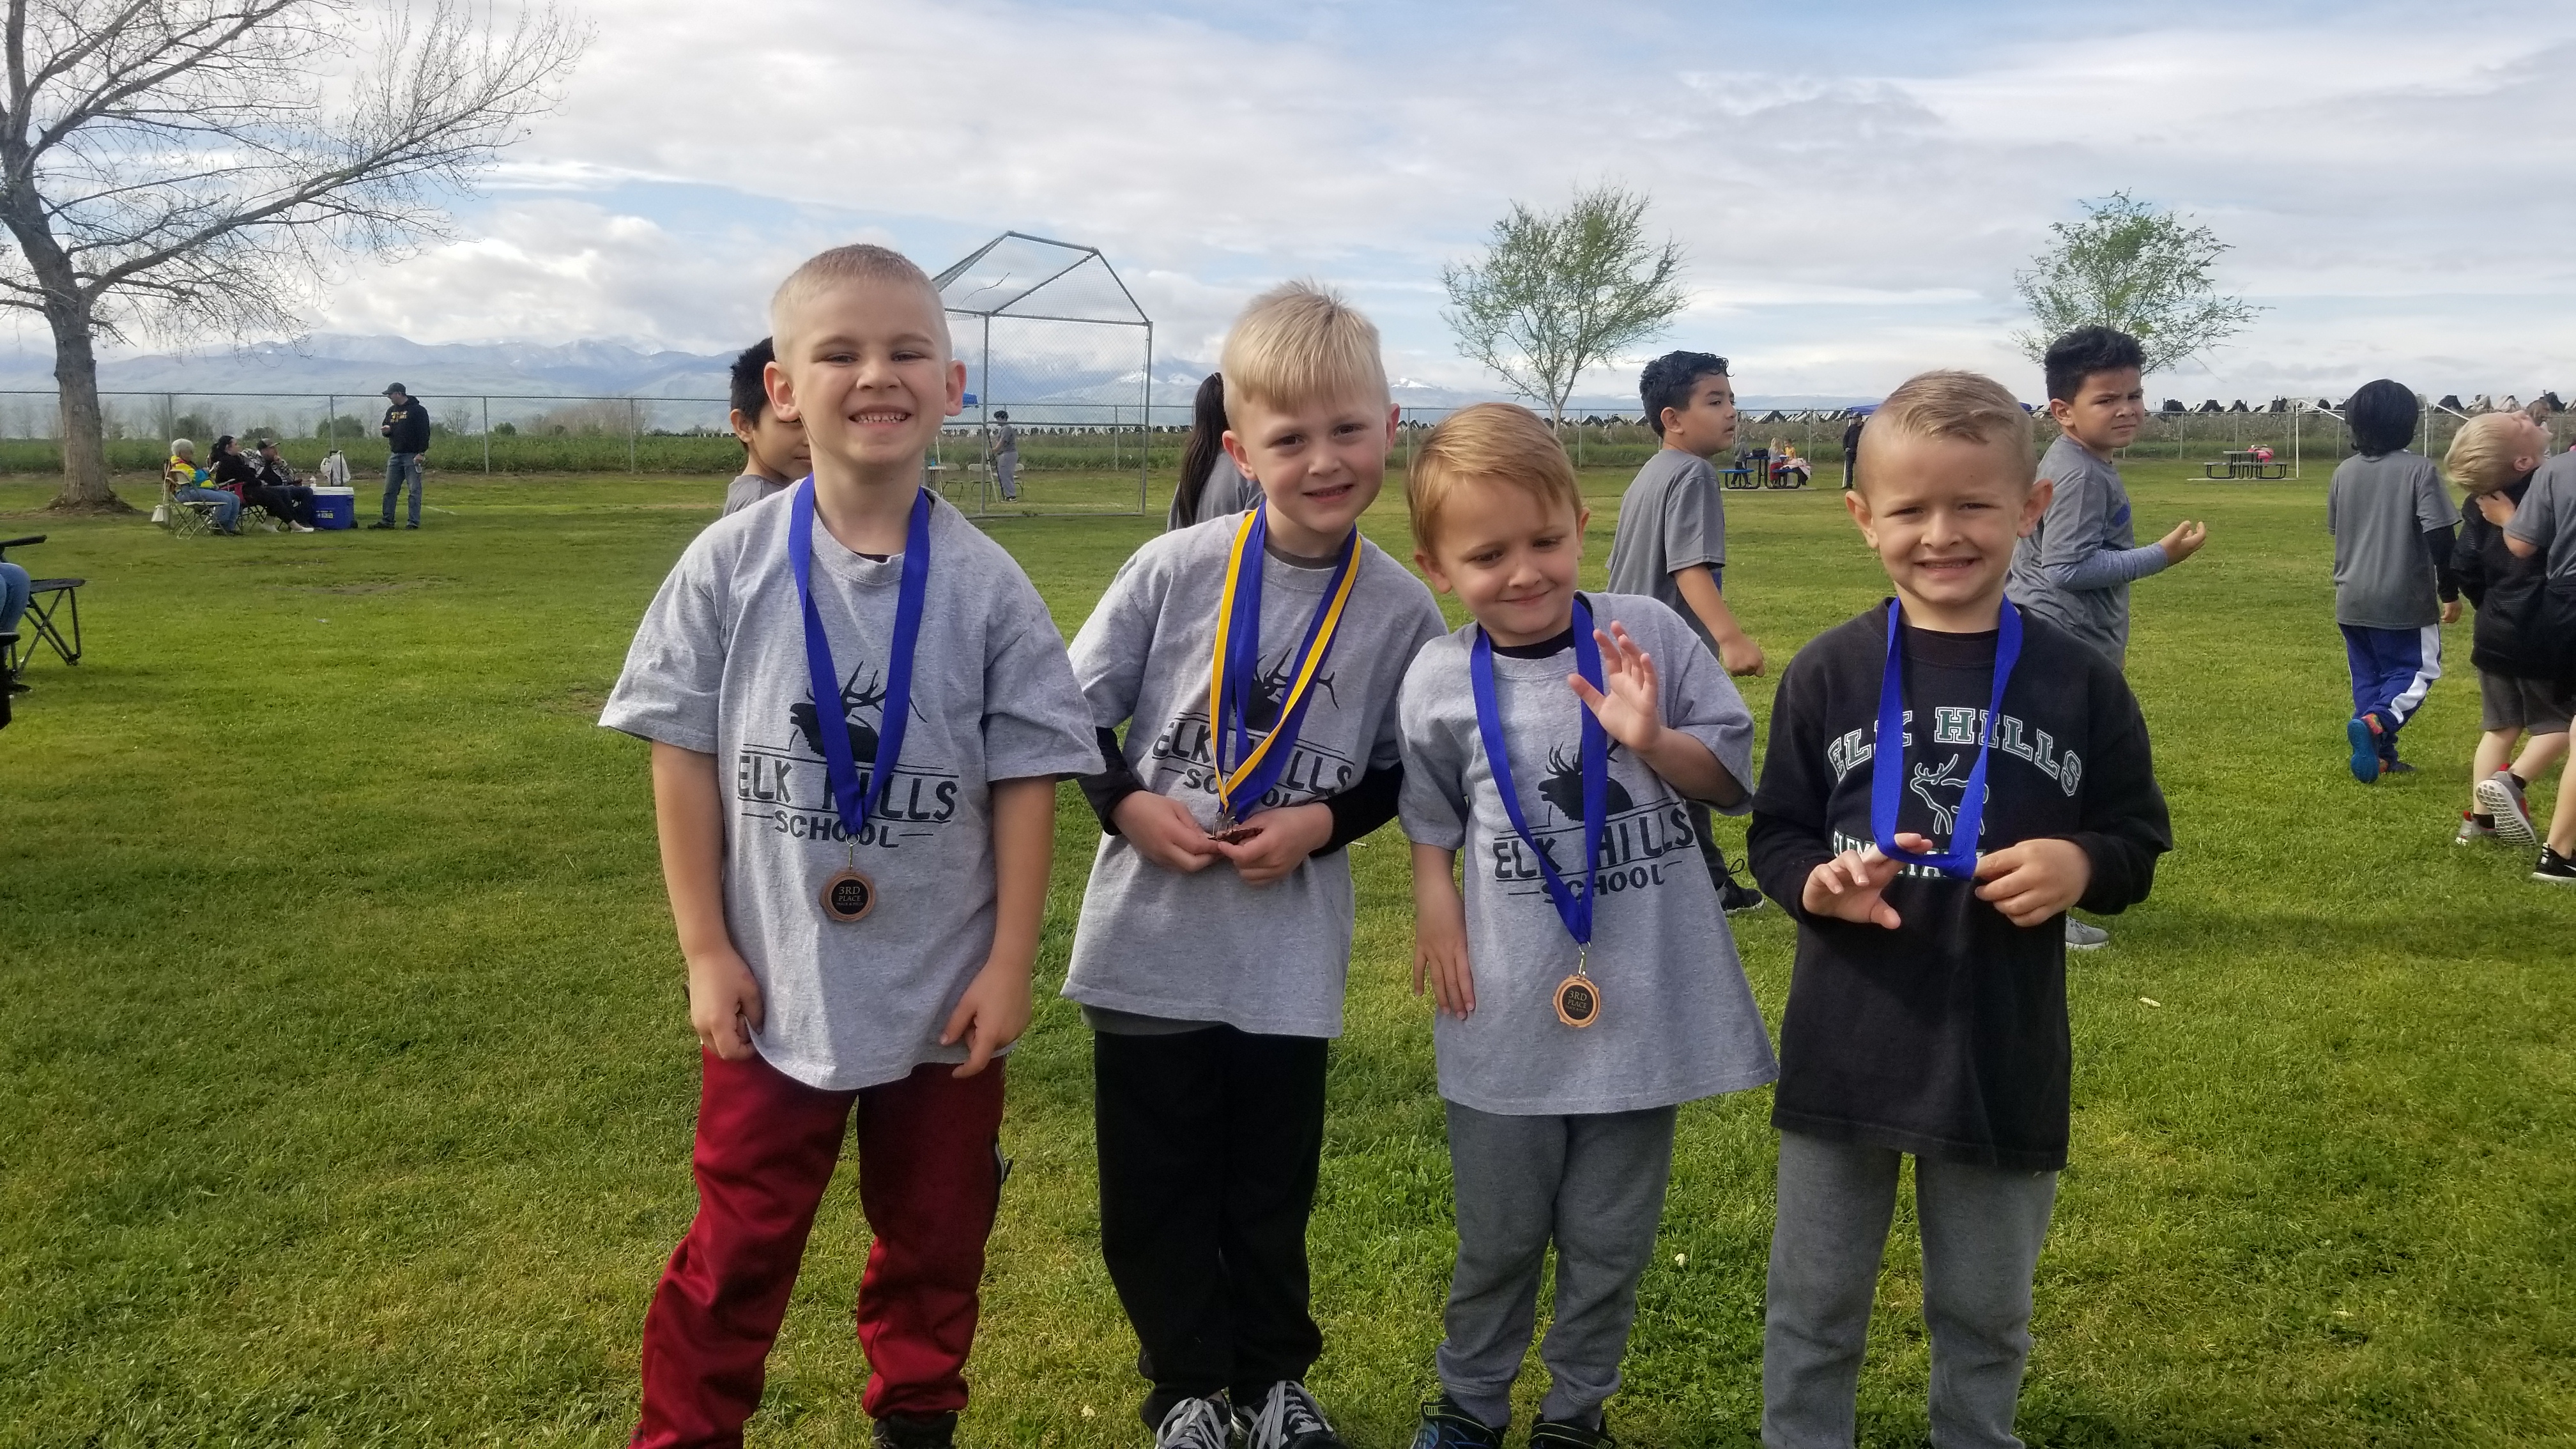 Kinder boys show off medals